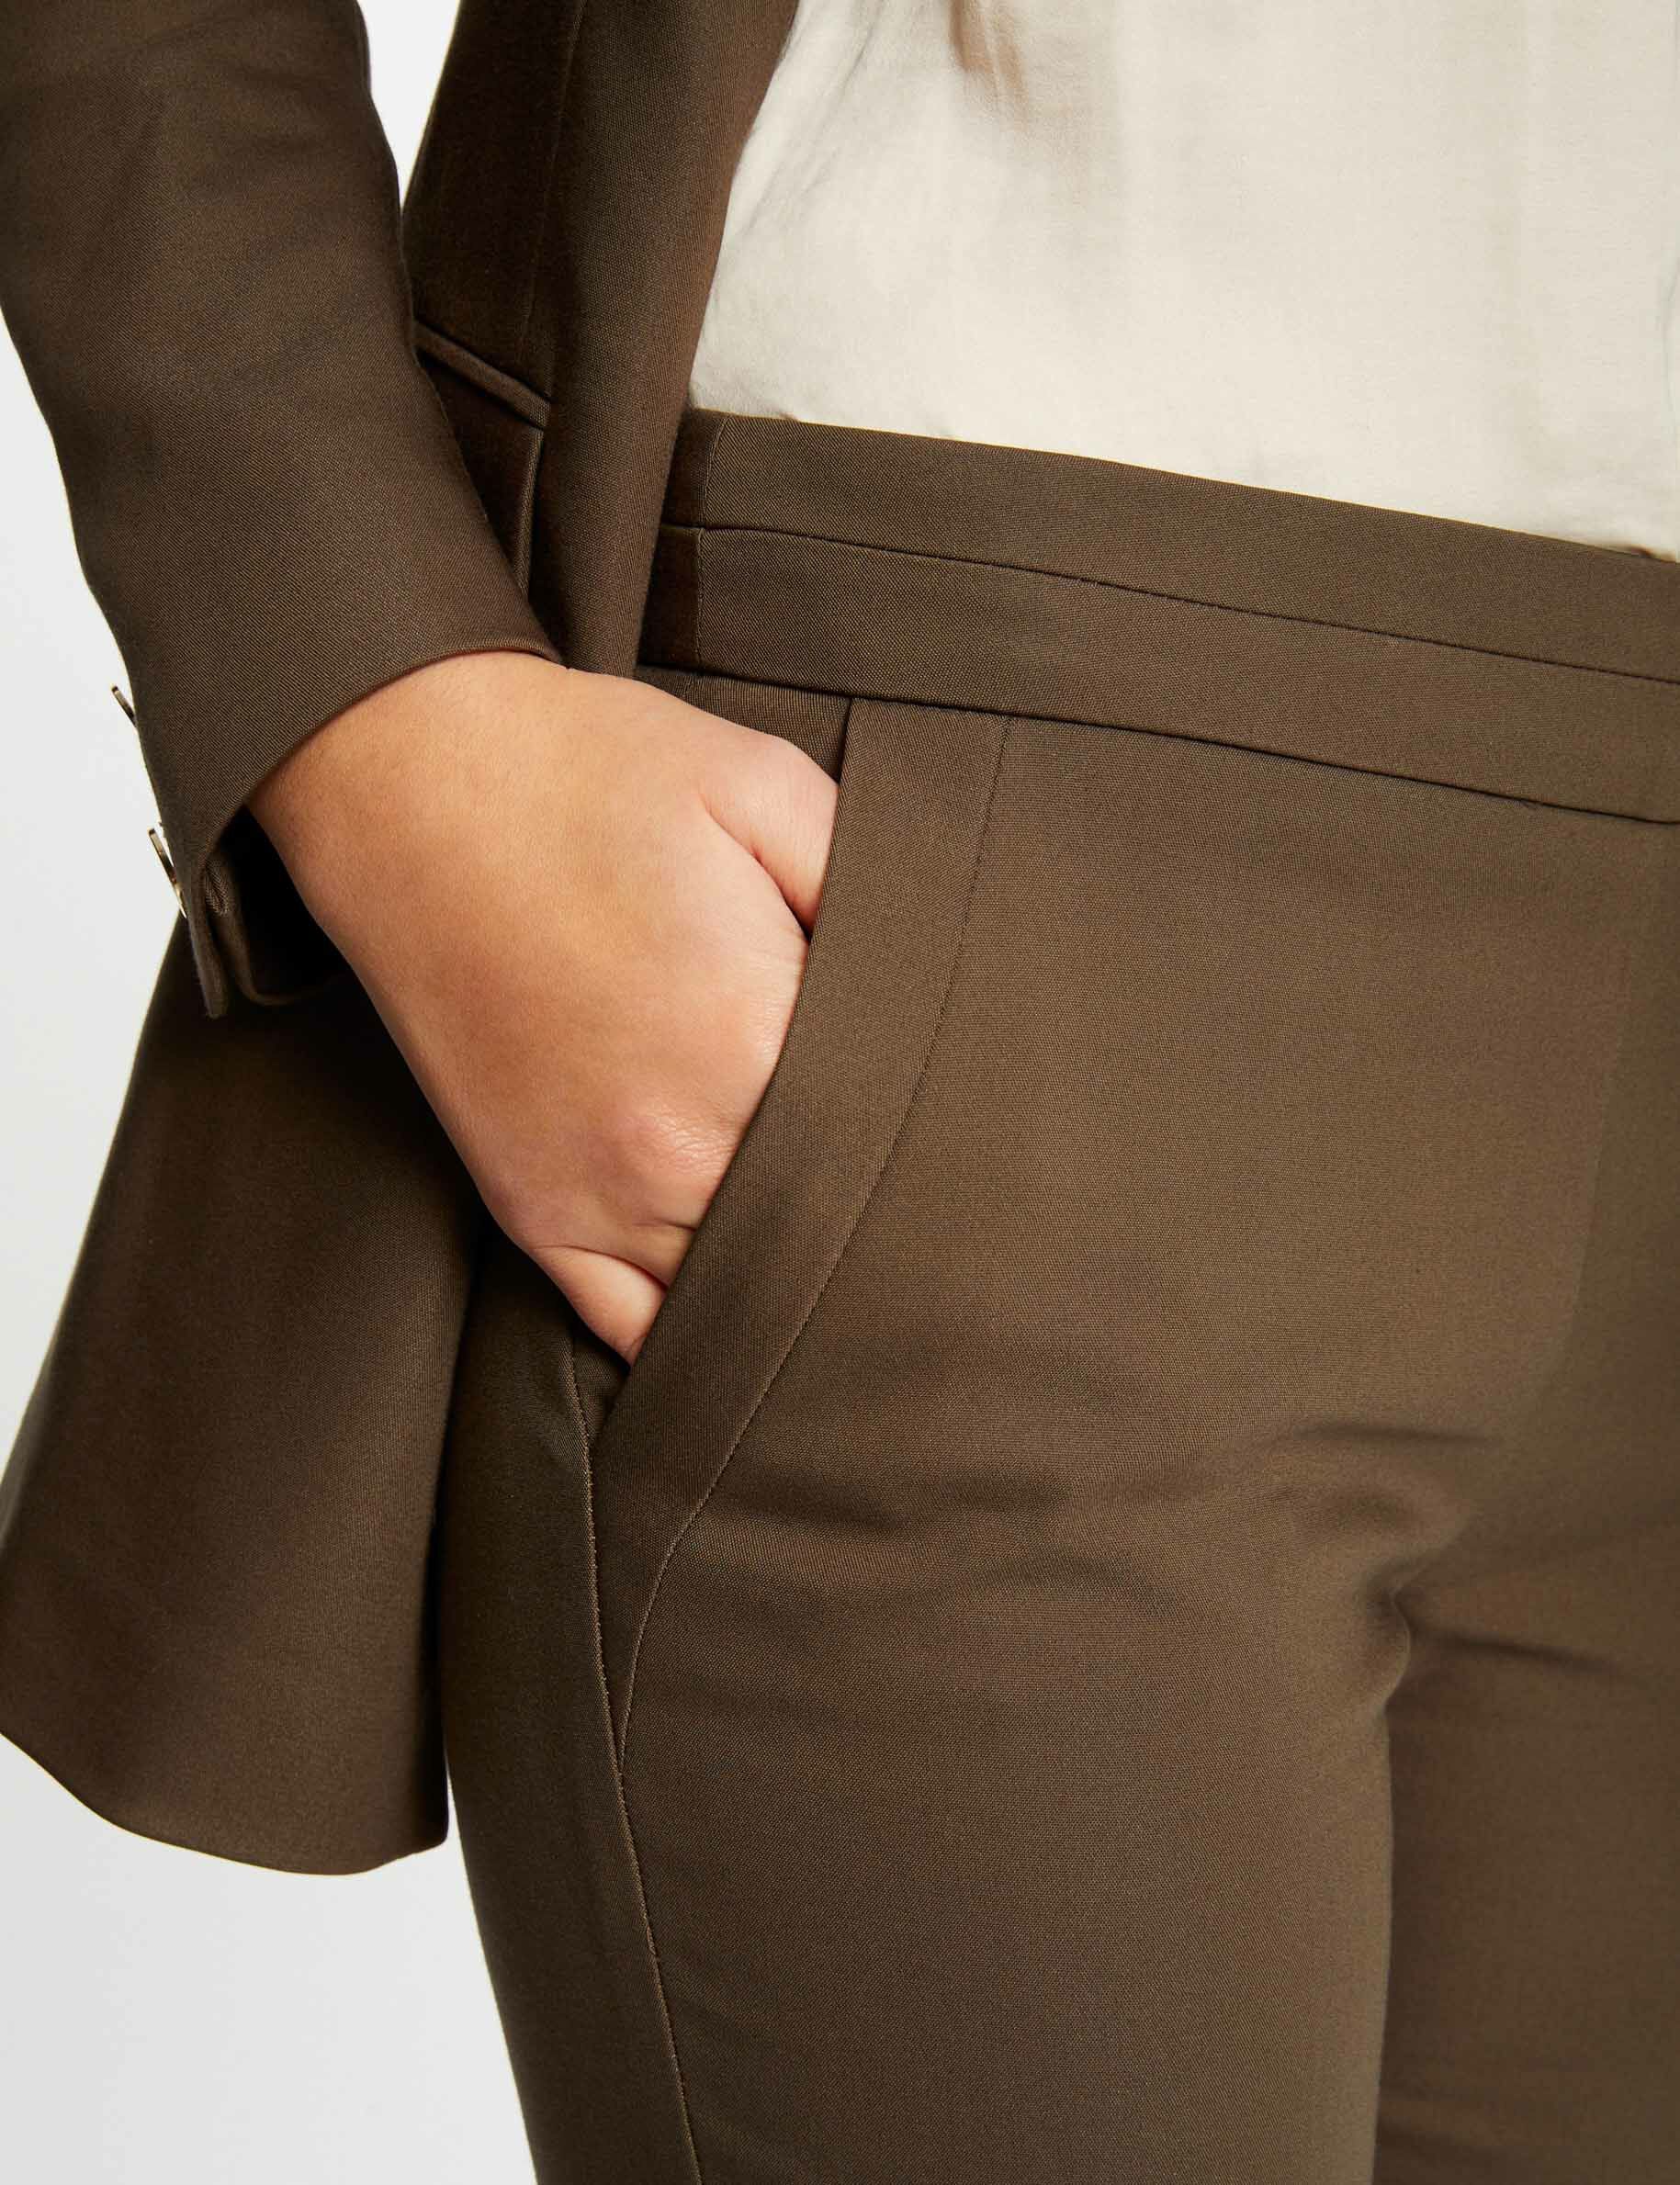 WDBBY Trouser suit jacket female office ladies business work uniform  interview formal suit trousers suit female (Colour: A, Size: XXLcode) :  Amazon.de: Fashion